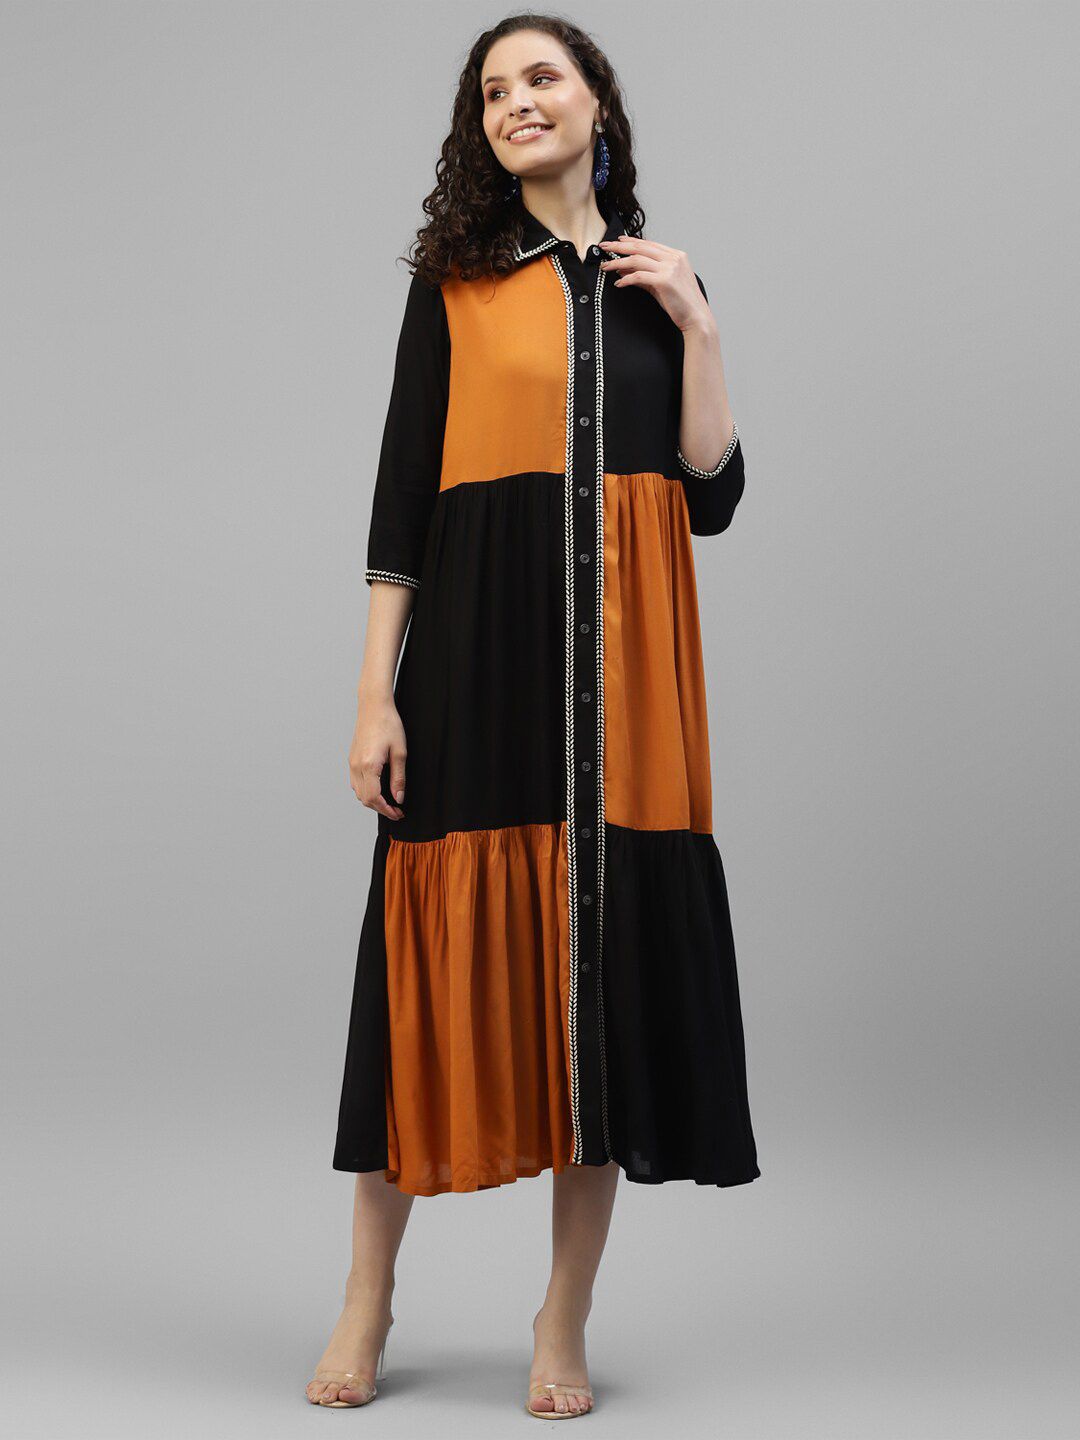 DEEBACO Multicoloured Colourblocked A-Line Midi Dress Price in India